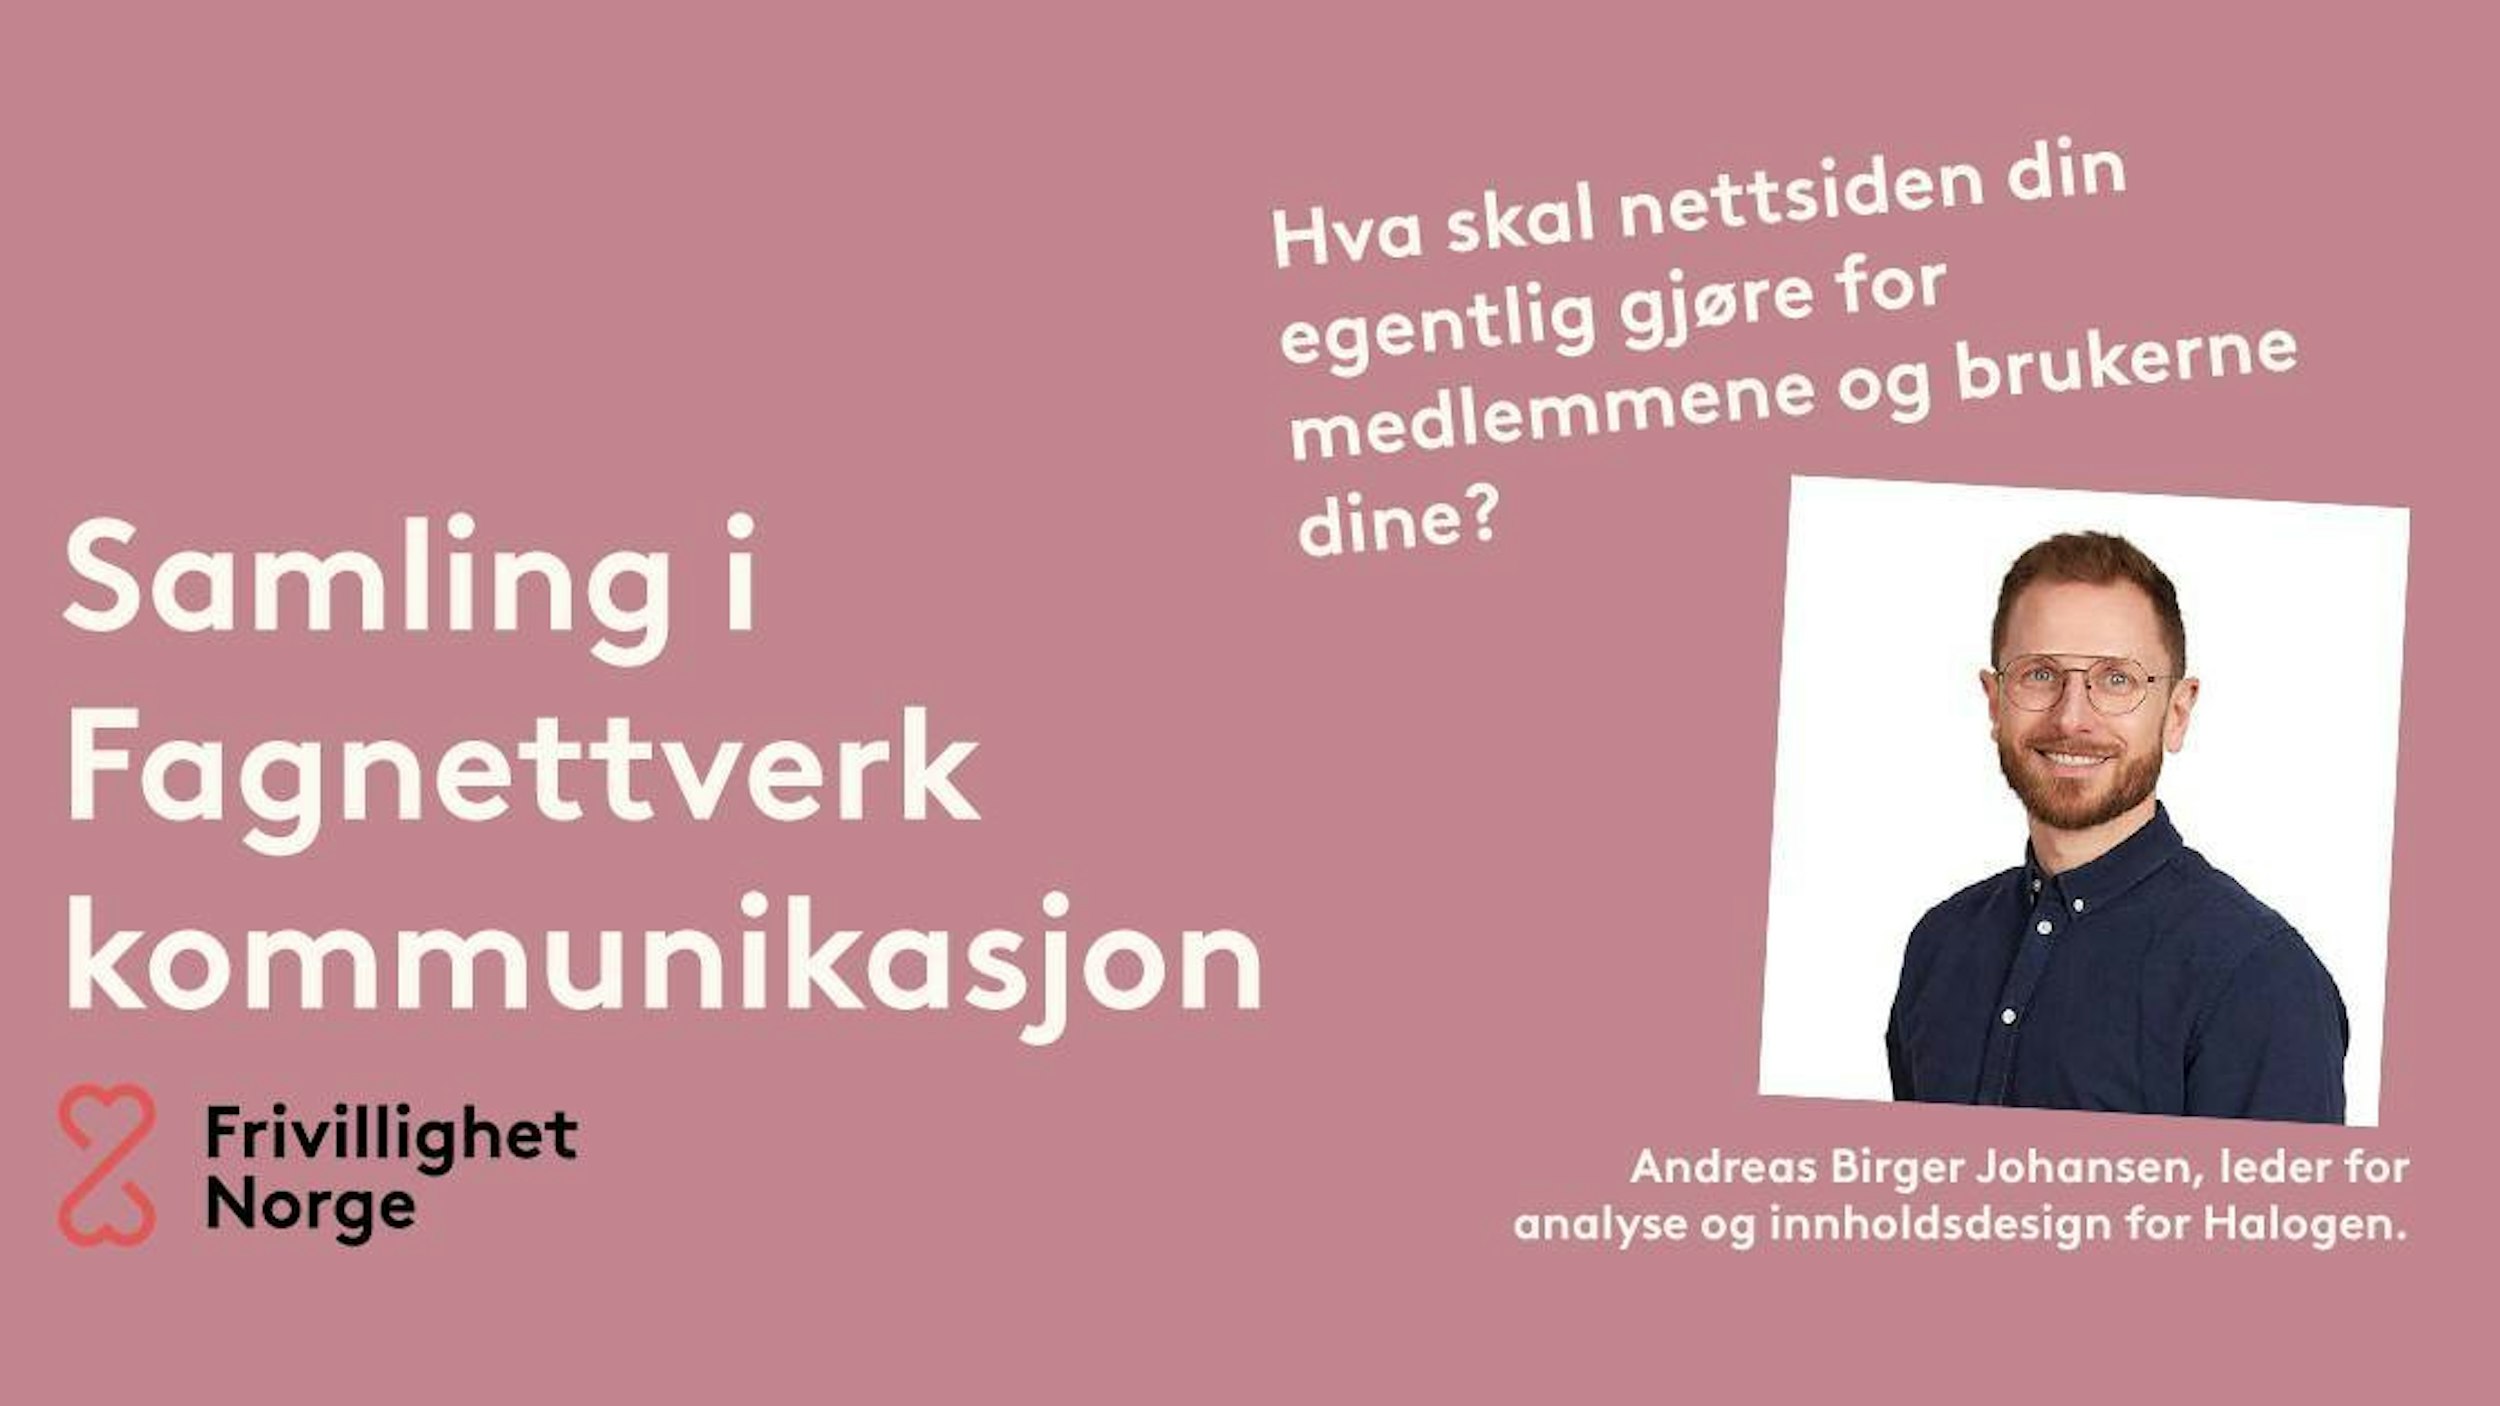 Bilde av Andreas Birger Johansen. Andreas er leder for analyse og innholdsdesign for Halogen.